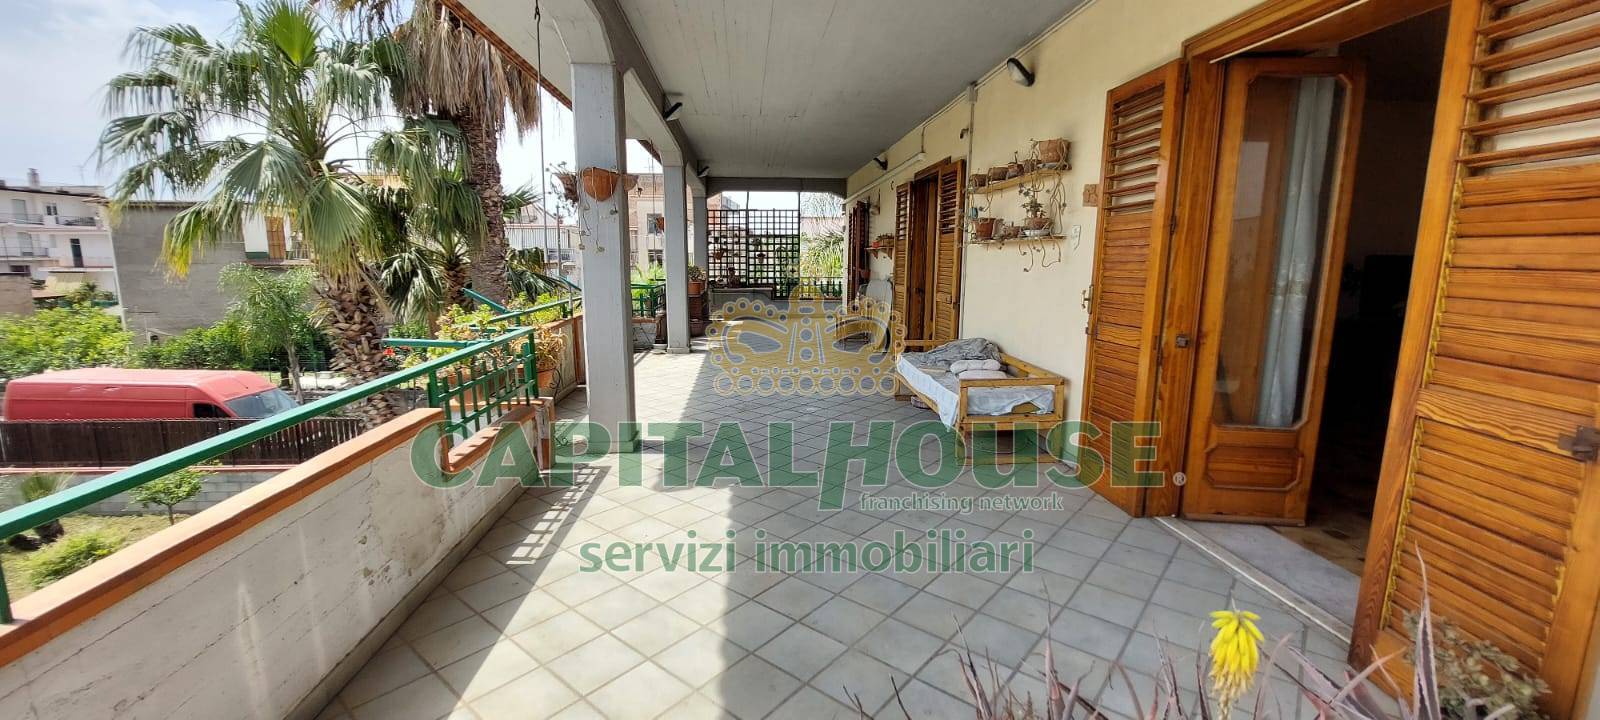 Appartamento in vendita a Saviano, 5 locali, prezzo € 139.000 | PortaleAgenzieImmobiliari.it